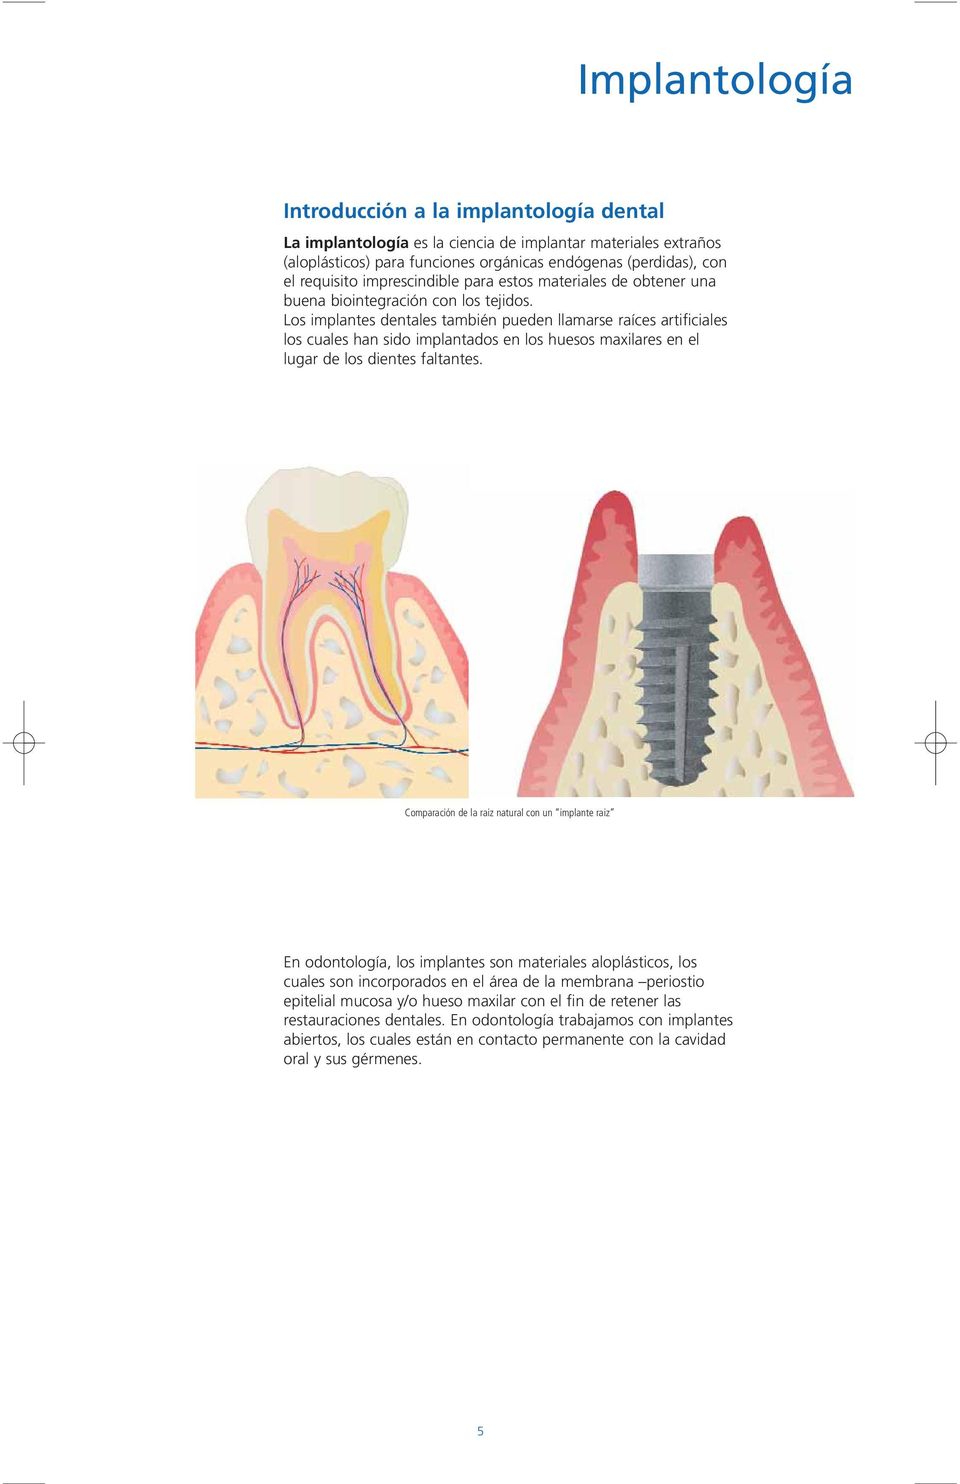 Los implantes dentales también pueden llamarse raíces artificiales los cuales han sido implantados en los huesos maxilares en el lugar de los dientes faltantes.